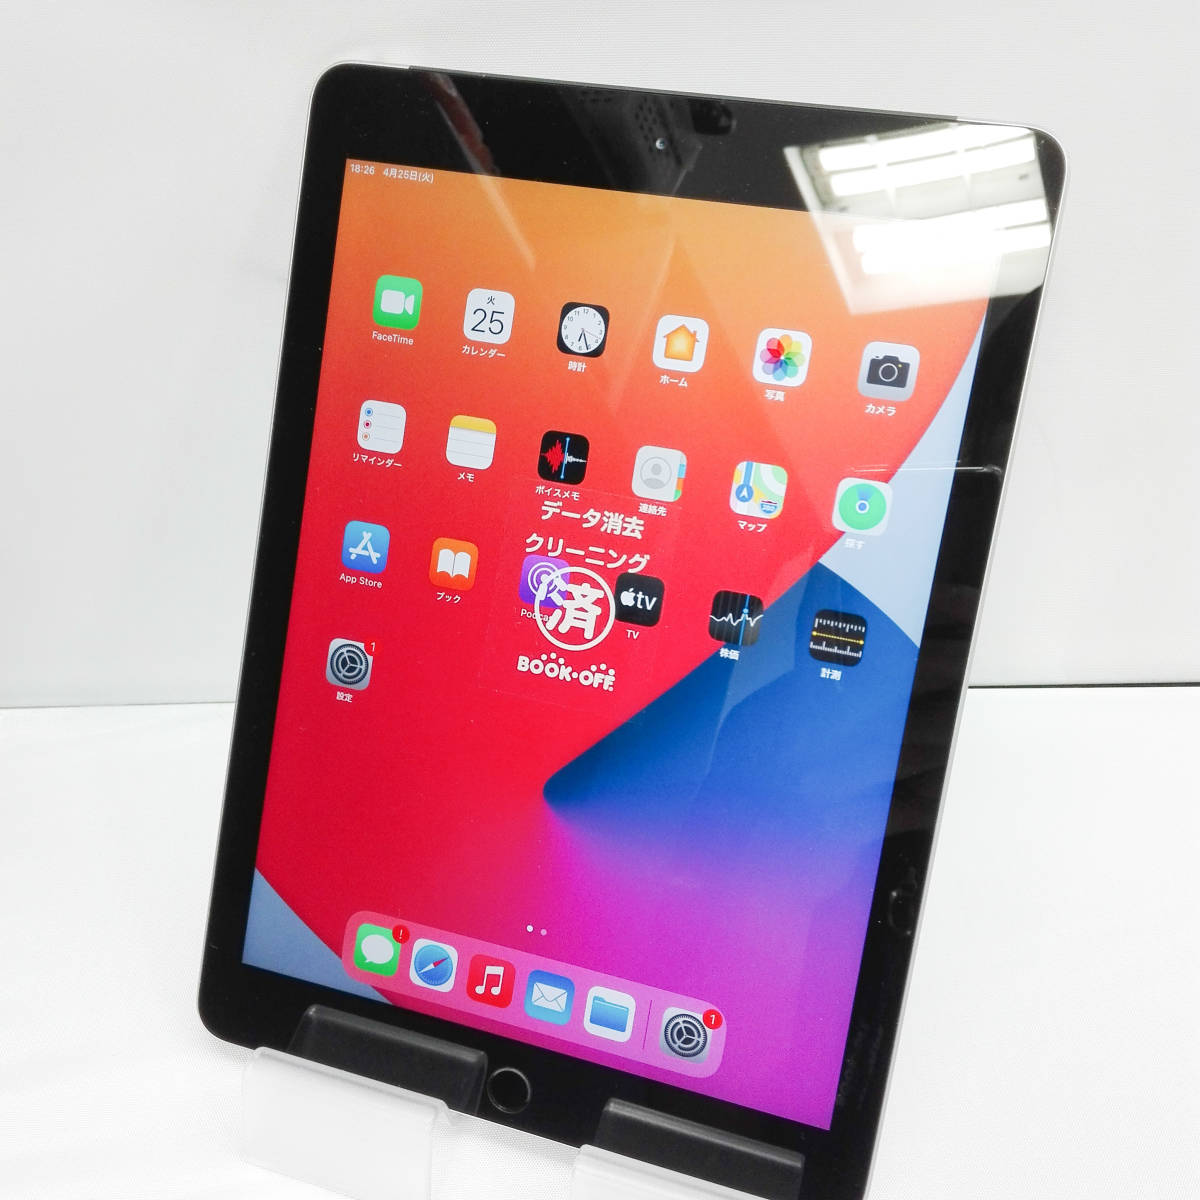 日本製】 iPad MR6N2J/A Wi-Fi+Cellular au スペースグレイ 32GB iPad